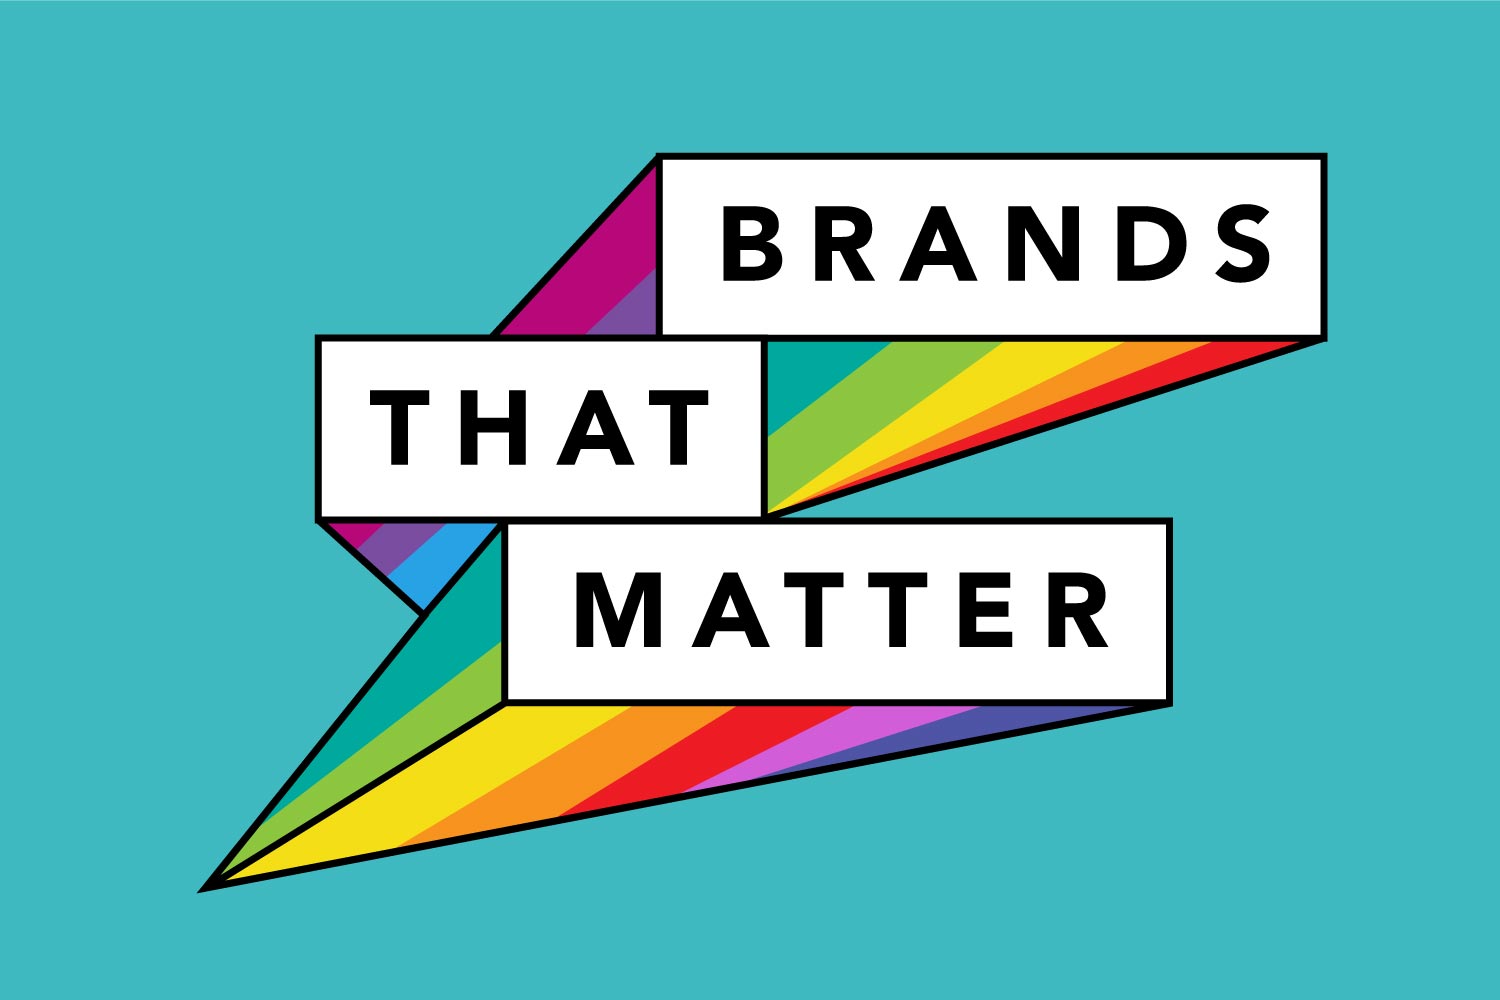 Brands that matter